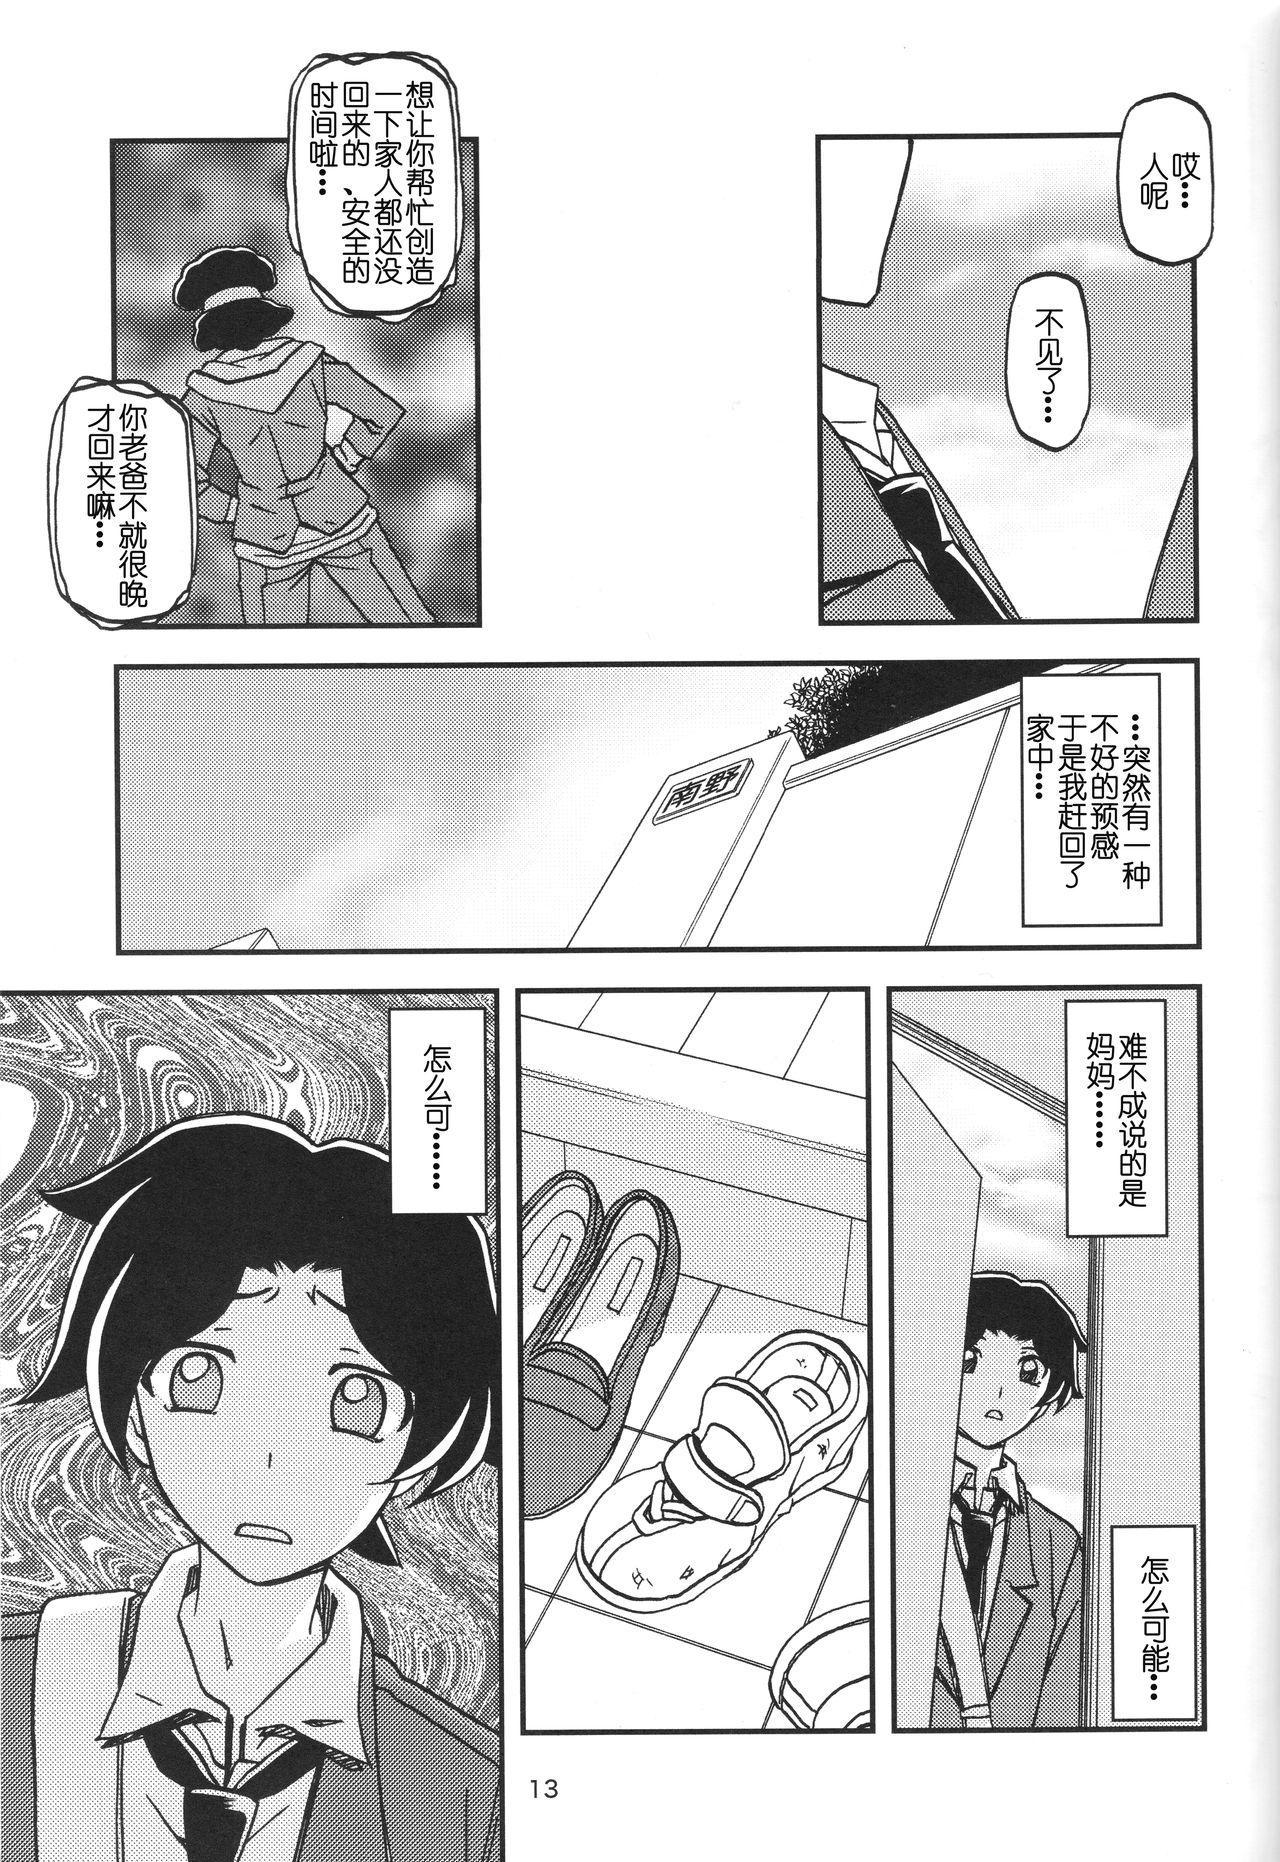 Boy Akebi no Mi - Misora - Akebi no mi Big Butt - Page 12